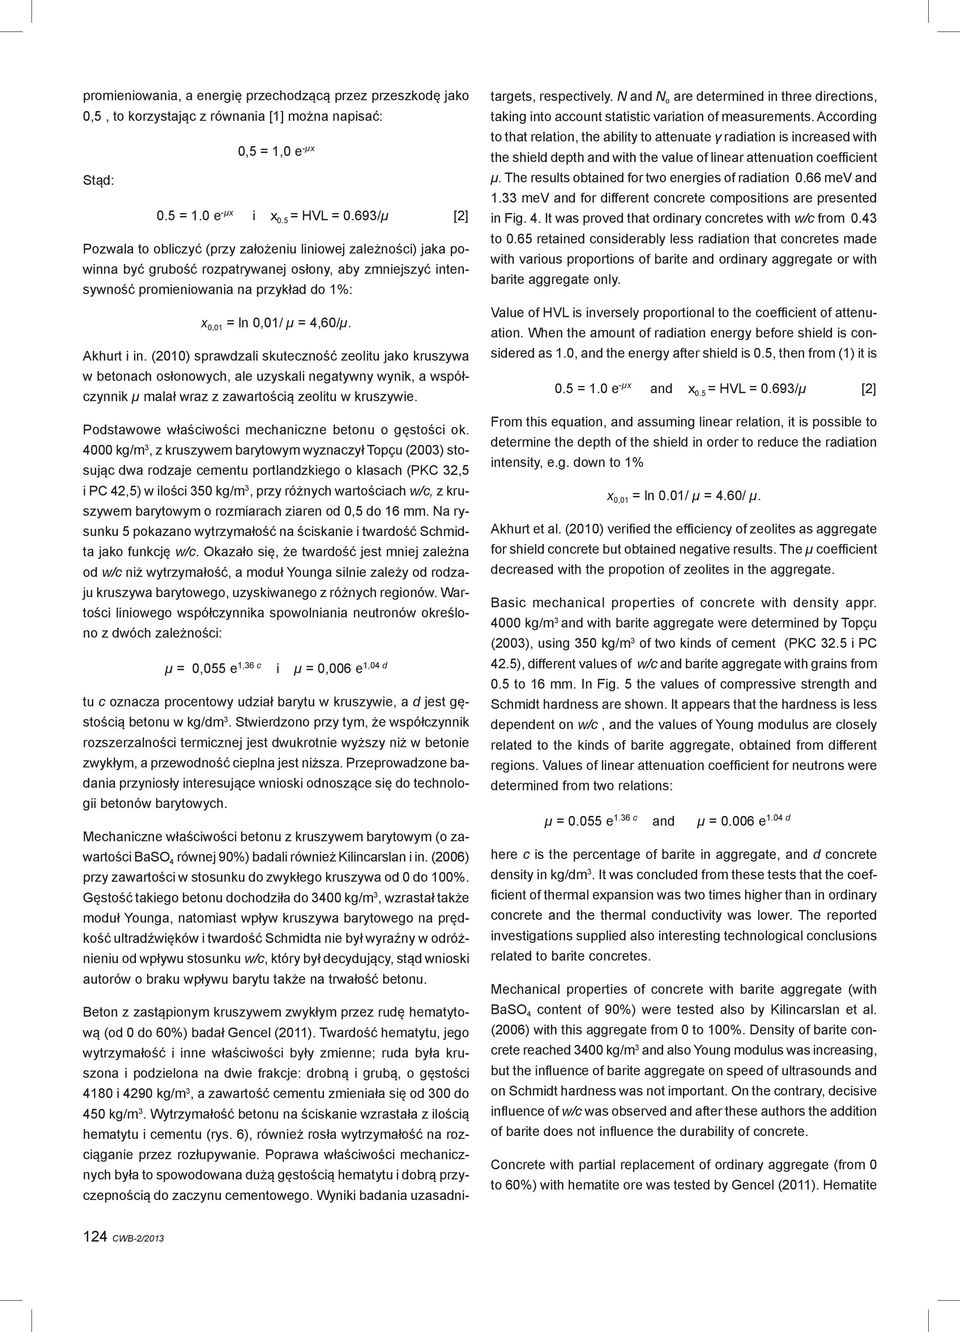 4,60/μ. Akhurt i in. (2010) sprawdzali skuteczność zeolitu jako kruszywa w betonach osłonowych, ale uzyskali negatywny wynik, a współczynnik μ malał wraz z zawartością zeolitu w kruszywie.